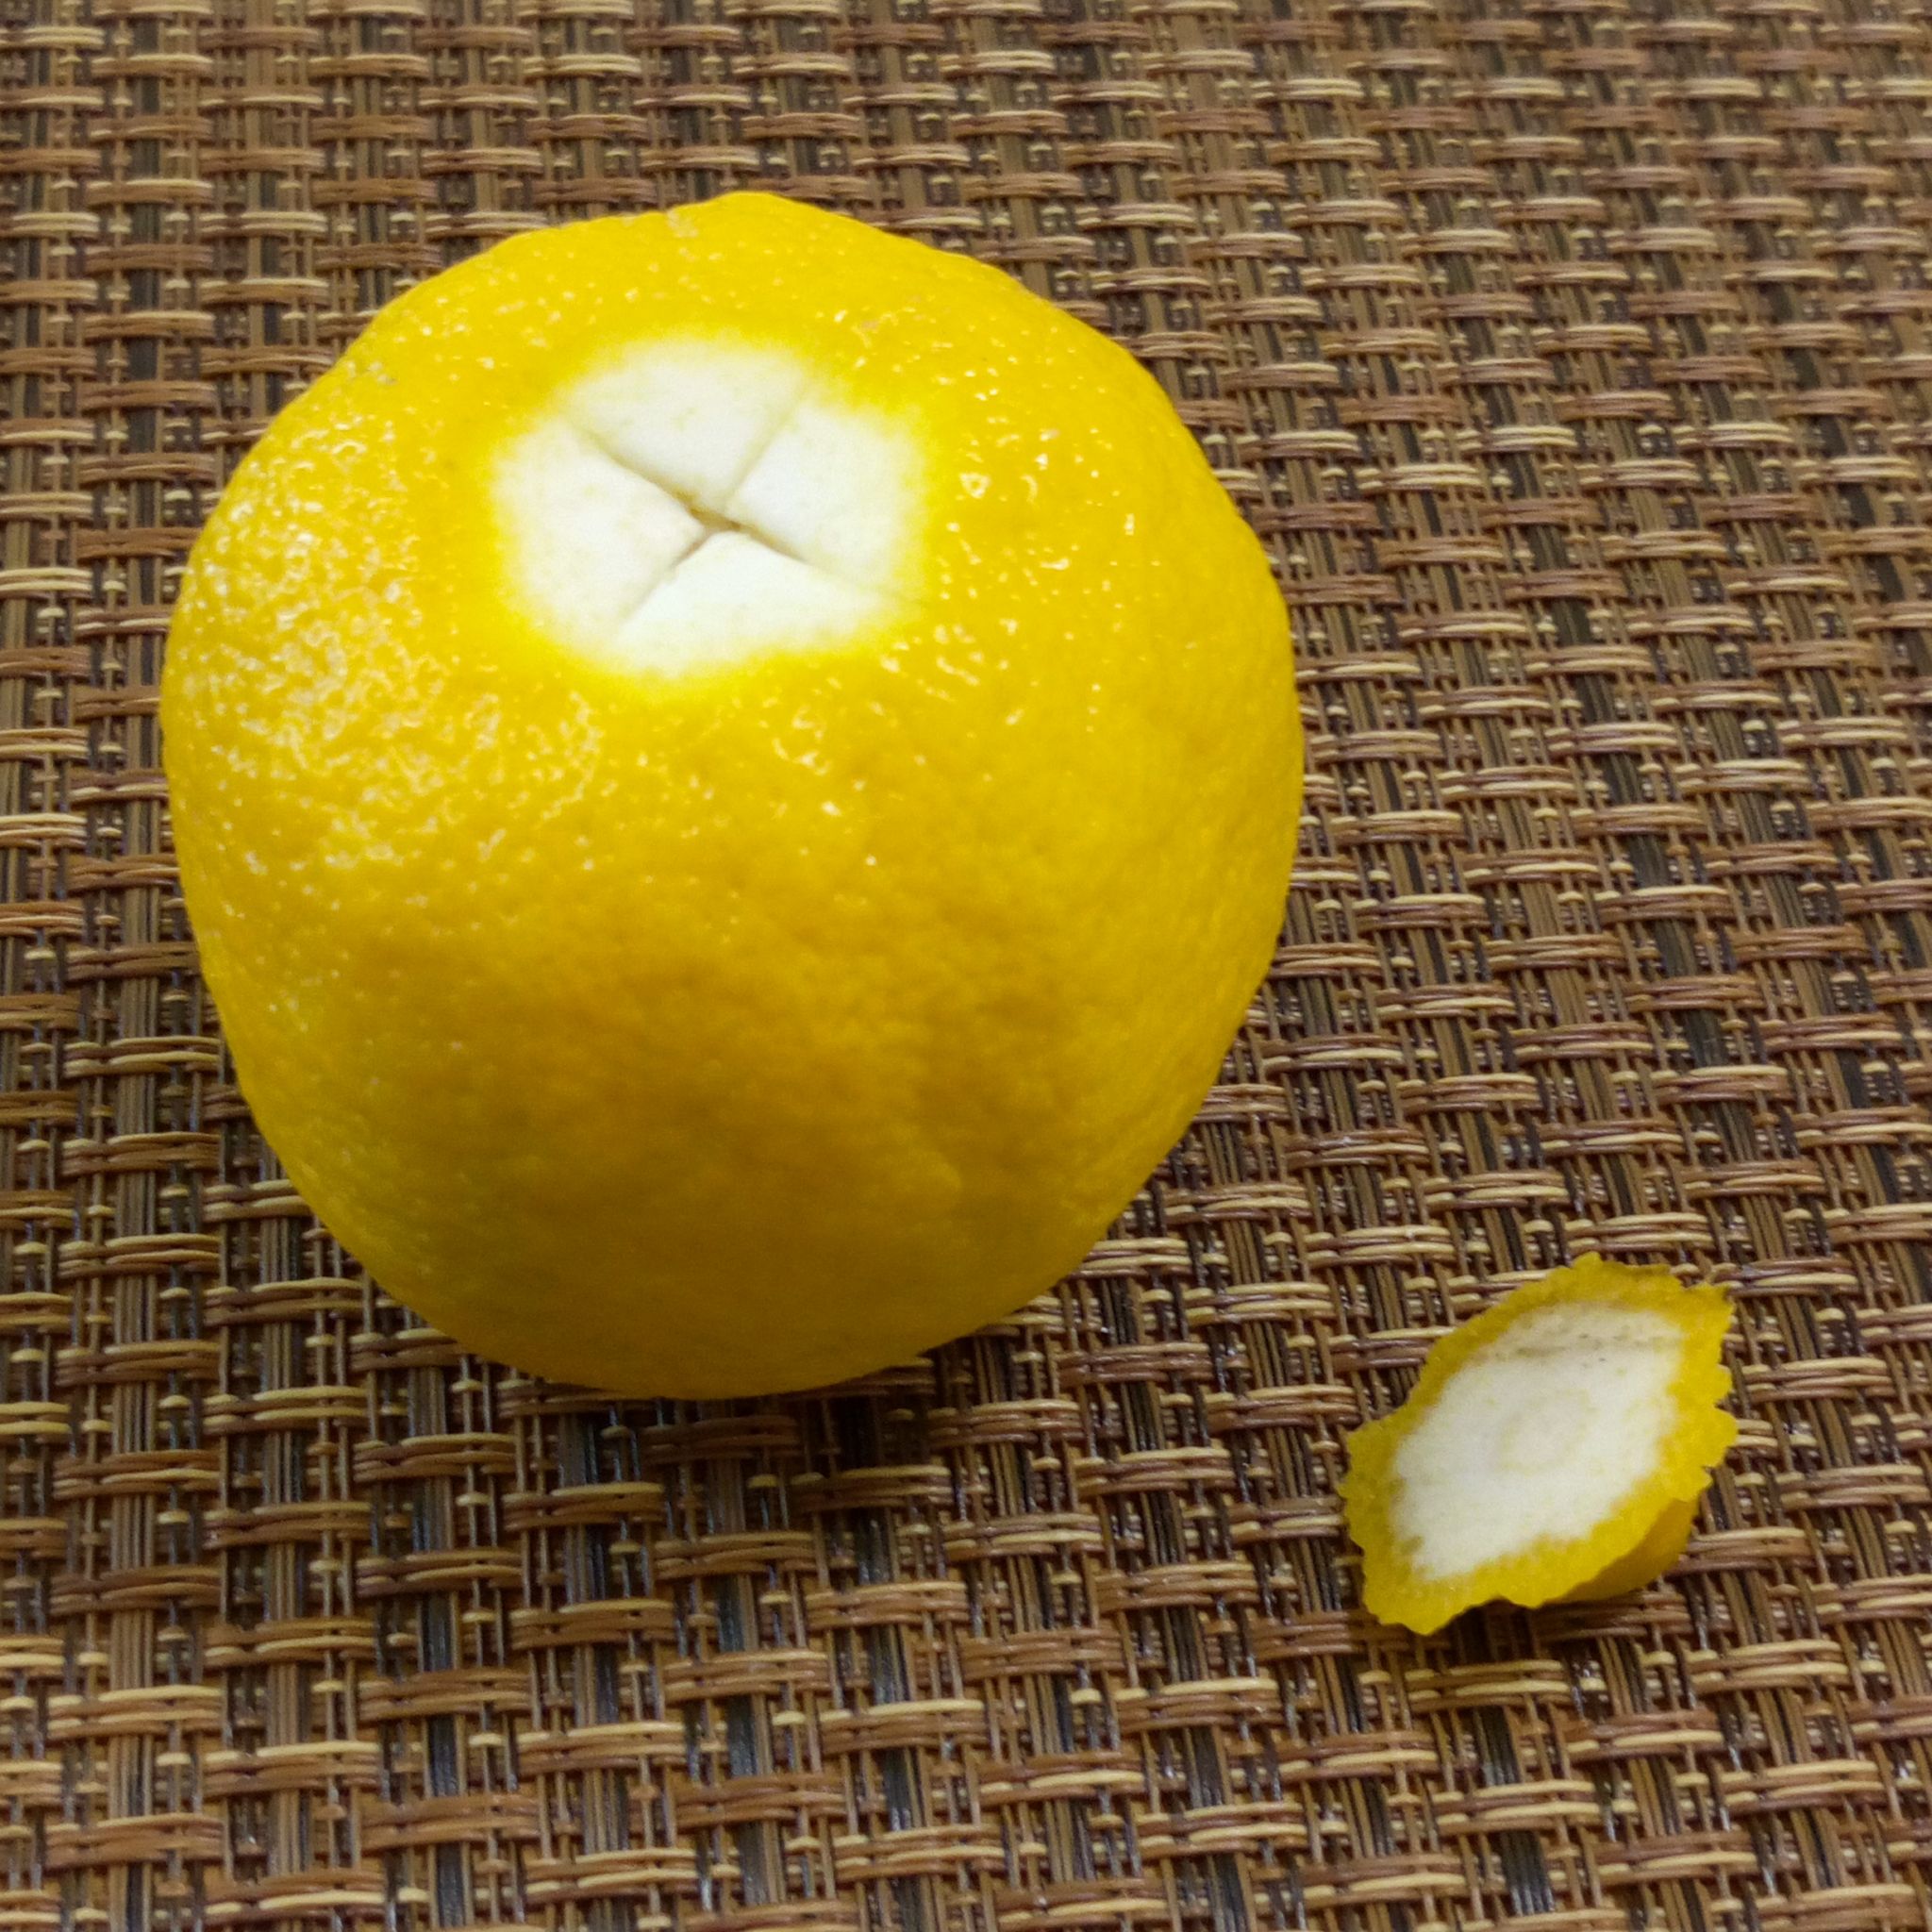 レモンの簡単な絞り方 絞り器なしで タネが混ざらない方法 やまでら くみこ のレシピ